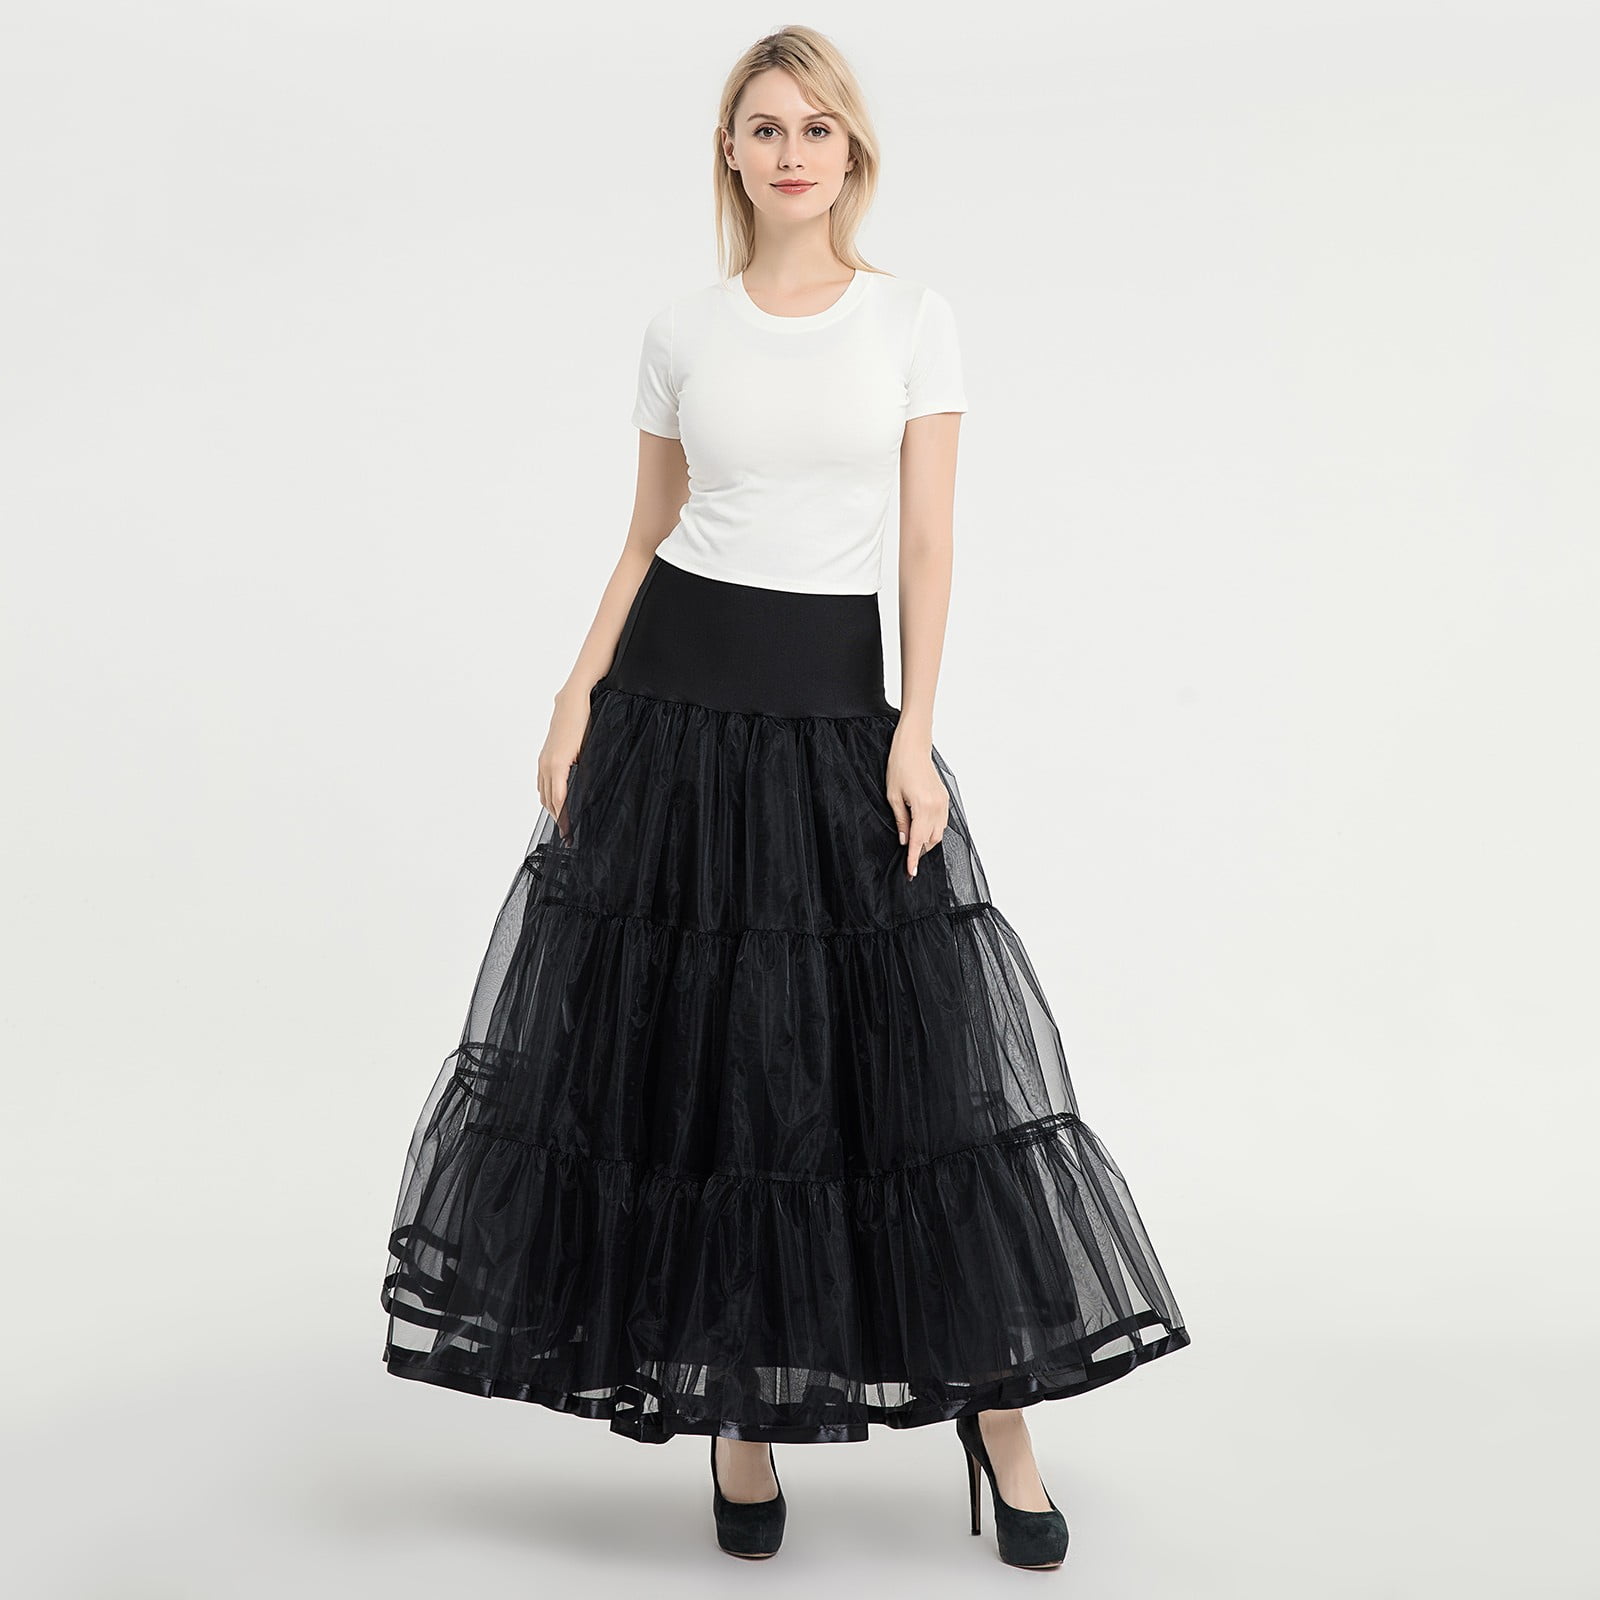 Soighxzc Woman Floor Length Boneless Skirt A Wedding Dress Skirt ...